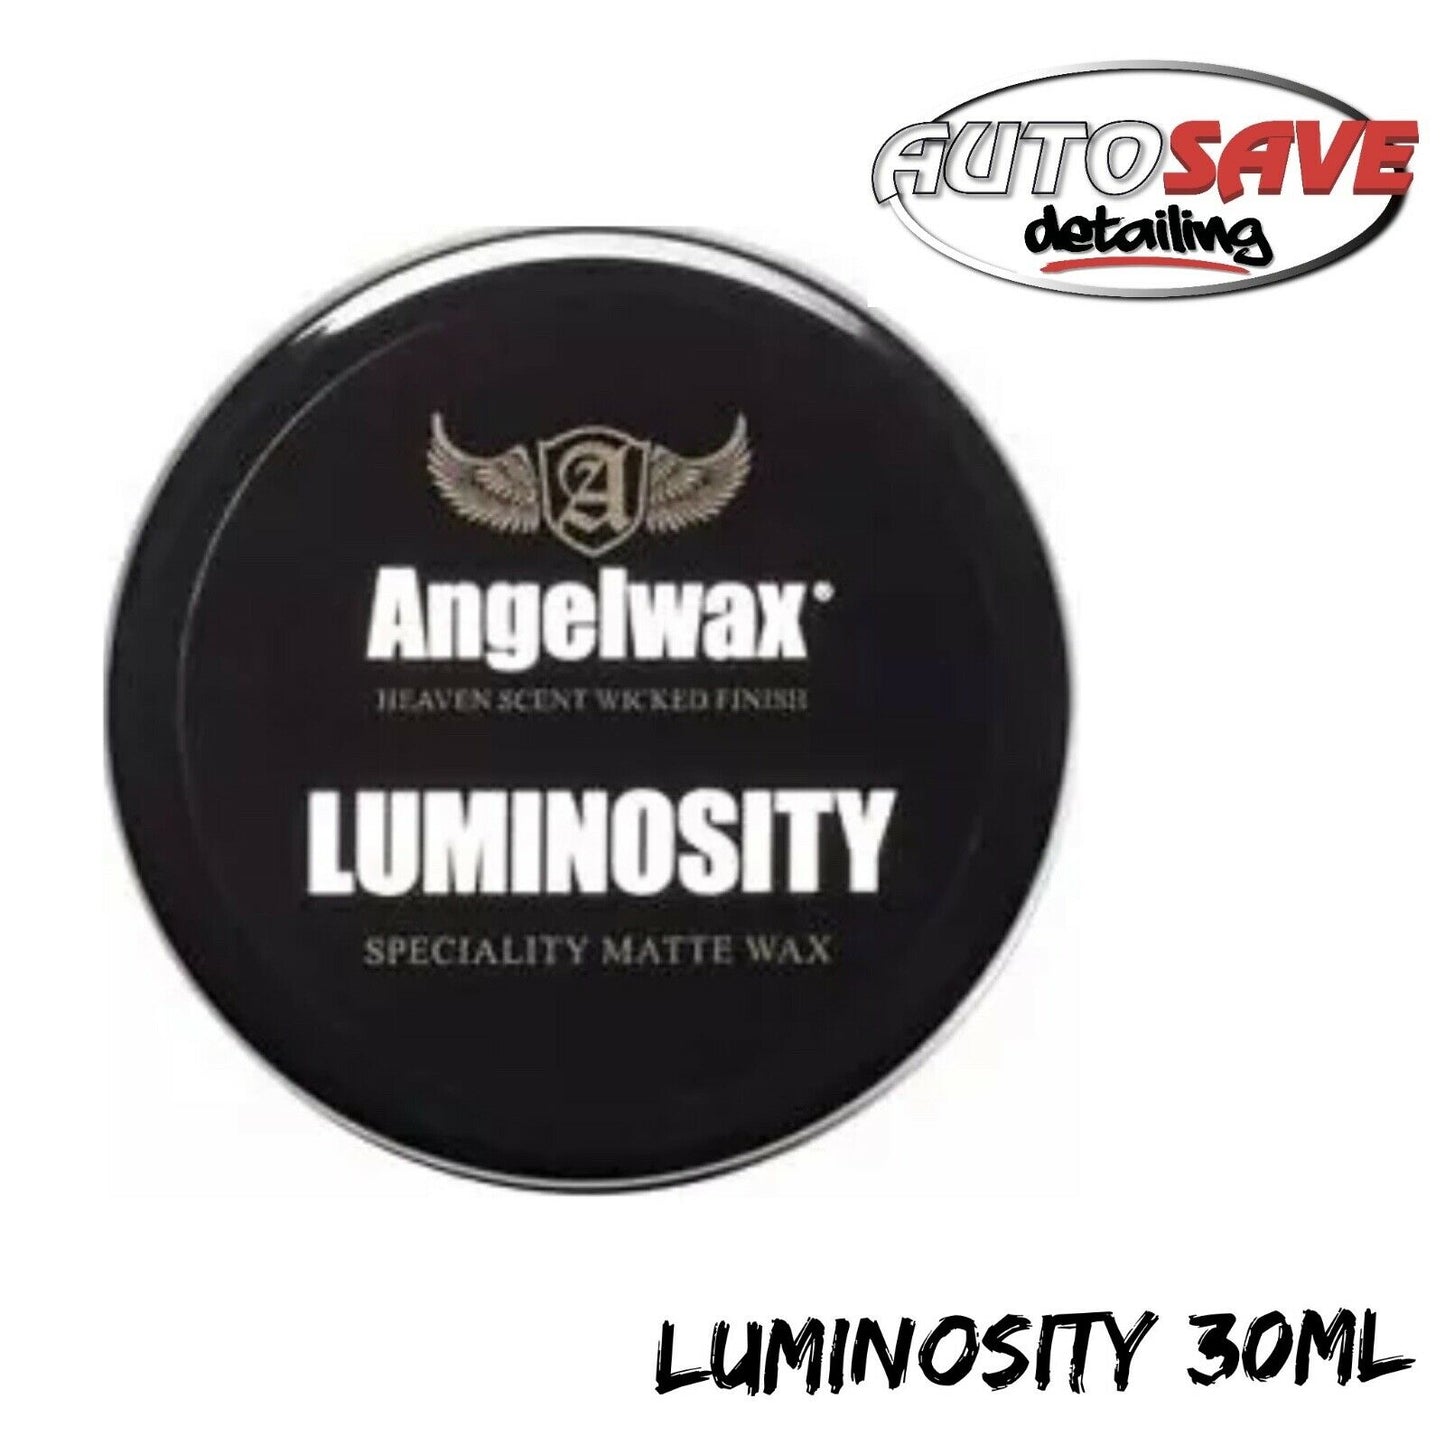 Angelwax Luminosity Wax 30g